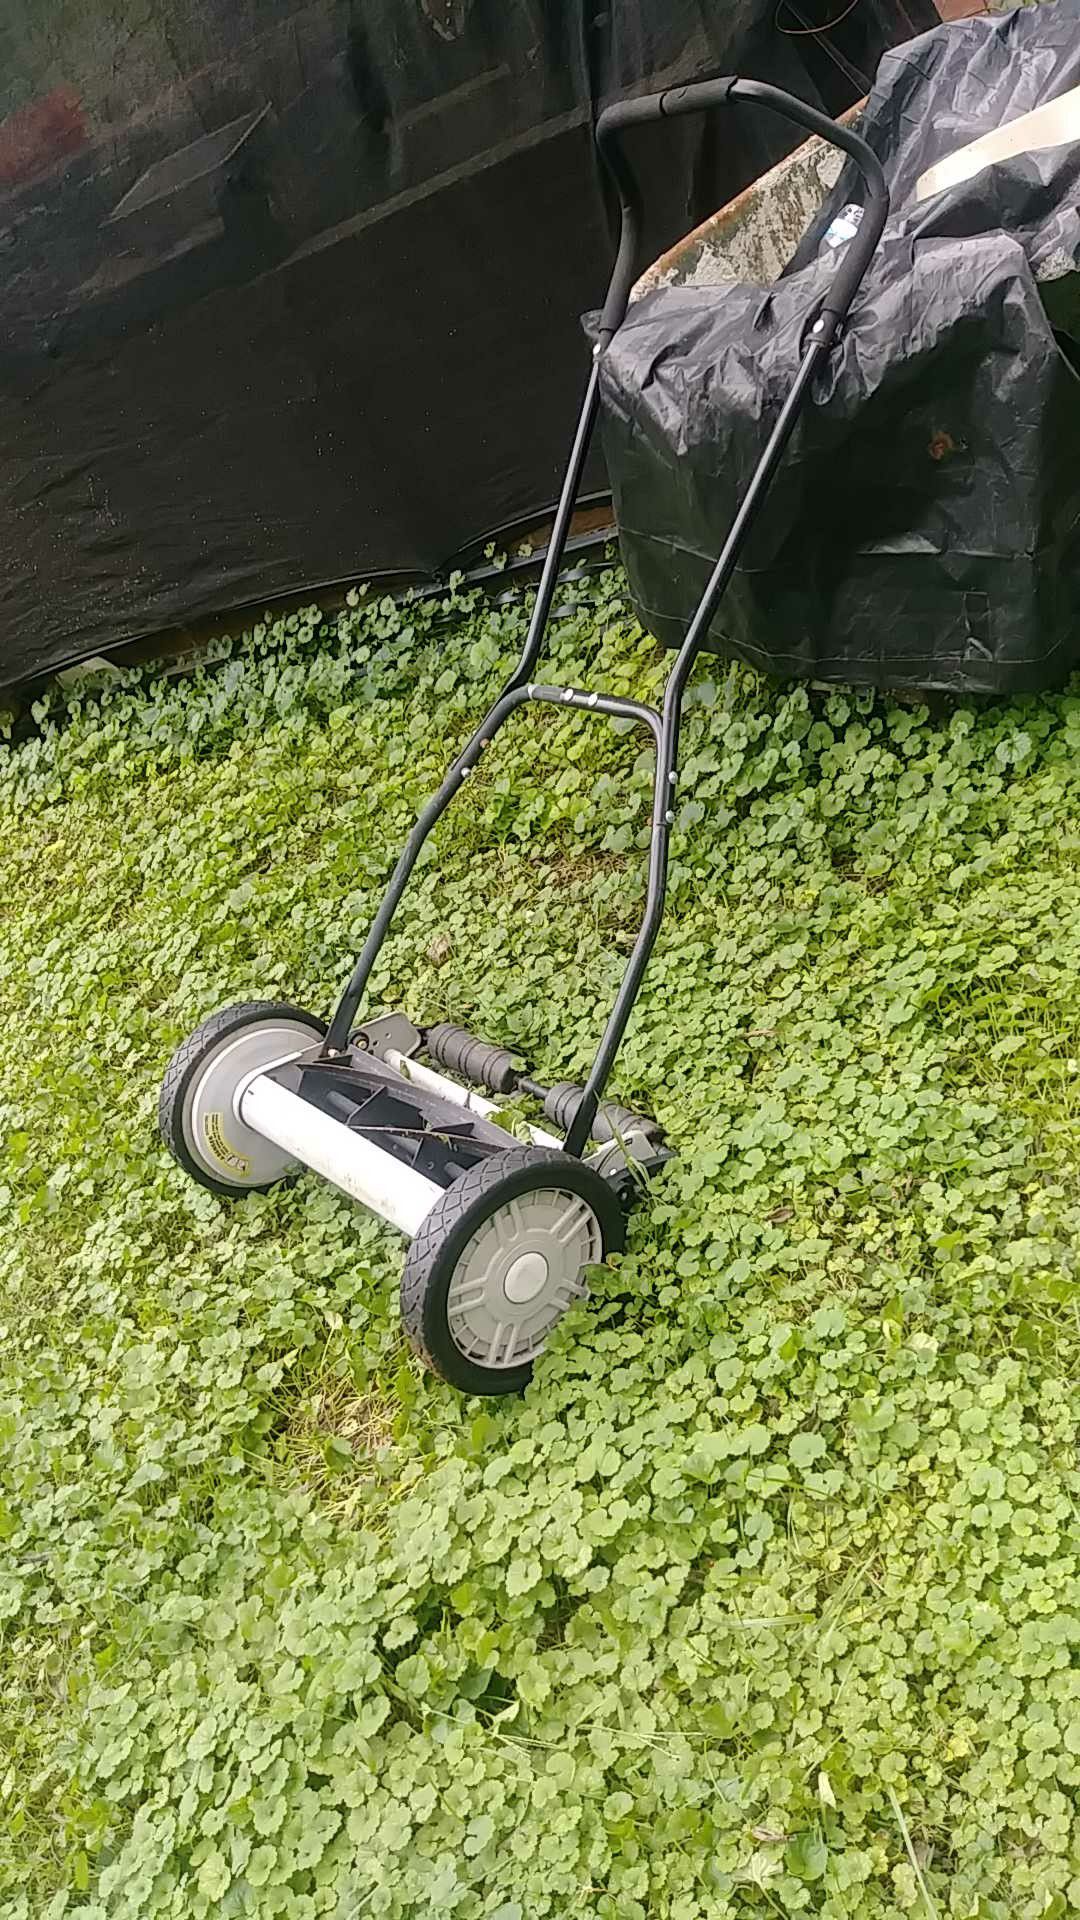 Vintage lawn mower